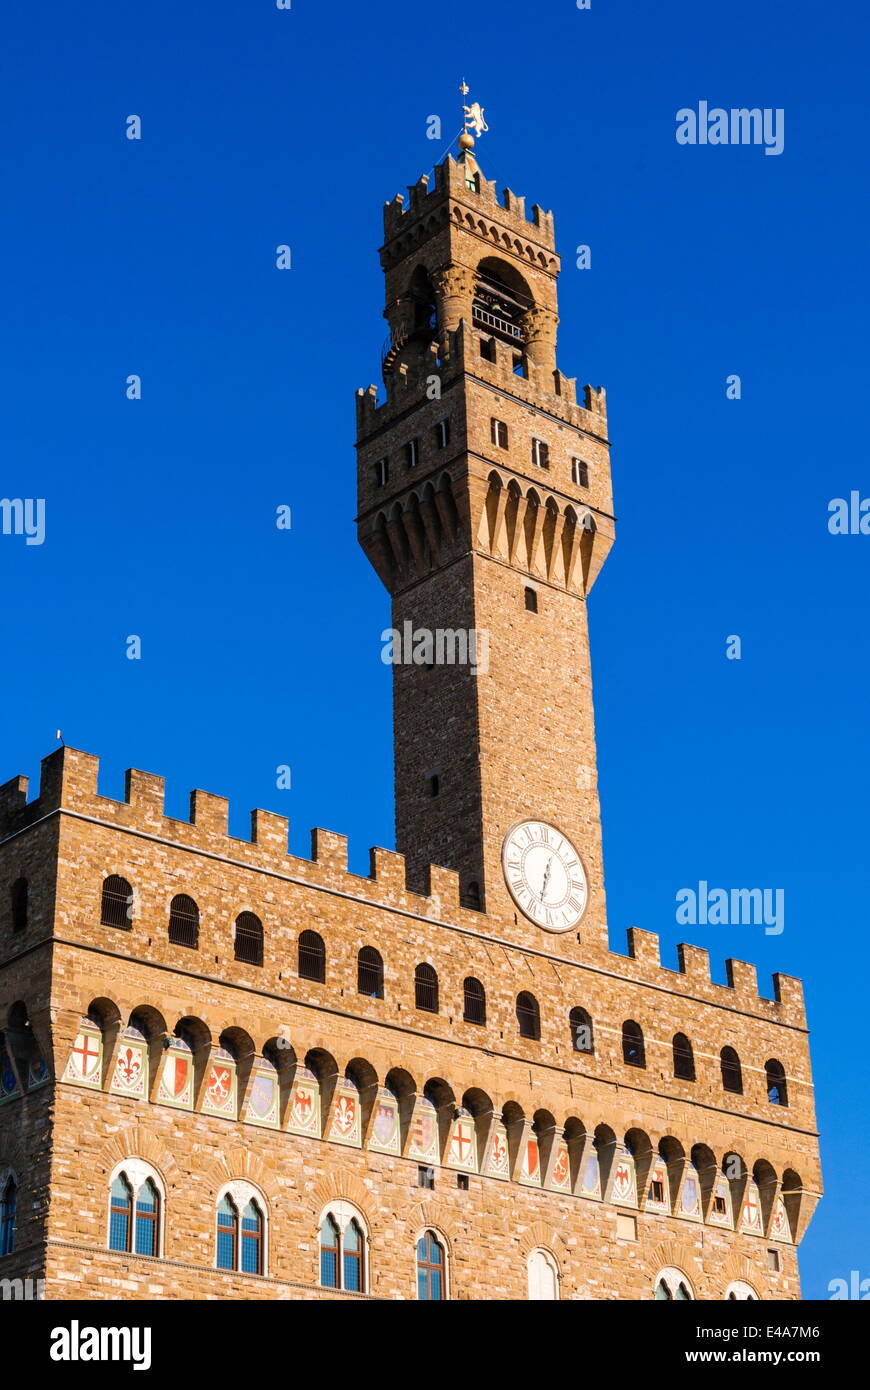 Palazzo Vecchio e Piazza della Signoria di Firenze (Firenze), il Sito Patrimonio Mondiale dell'UNESCO, Toscana, Italia, Europa Foto Stock